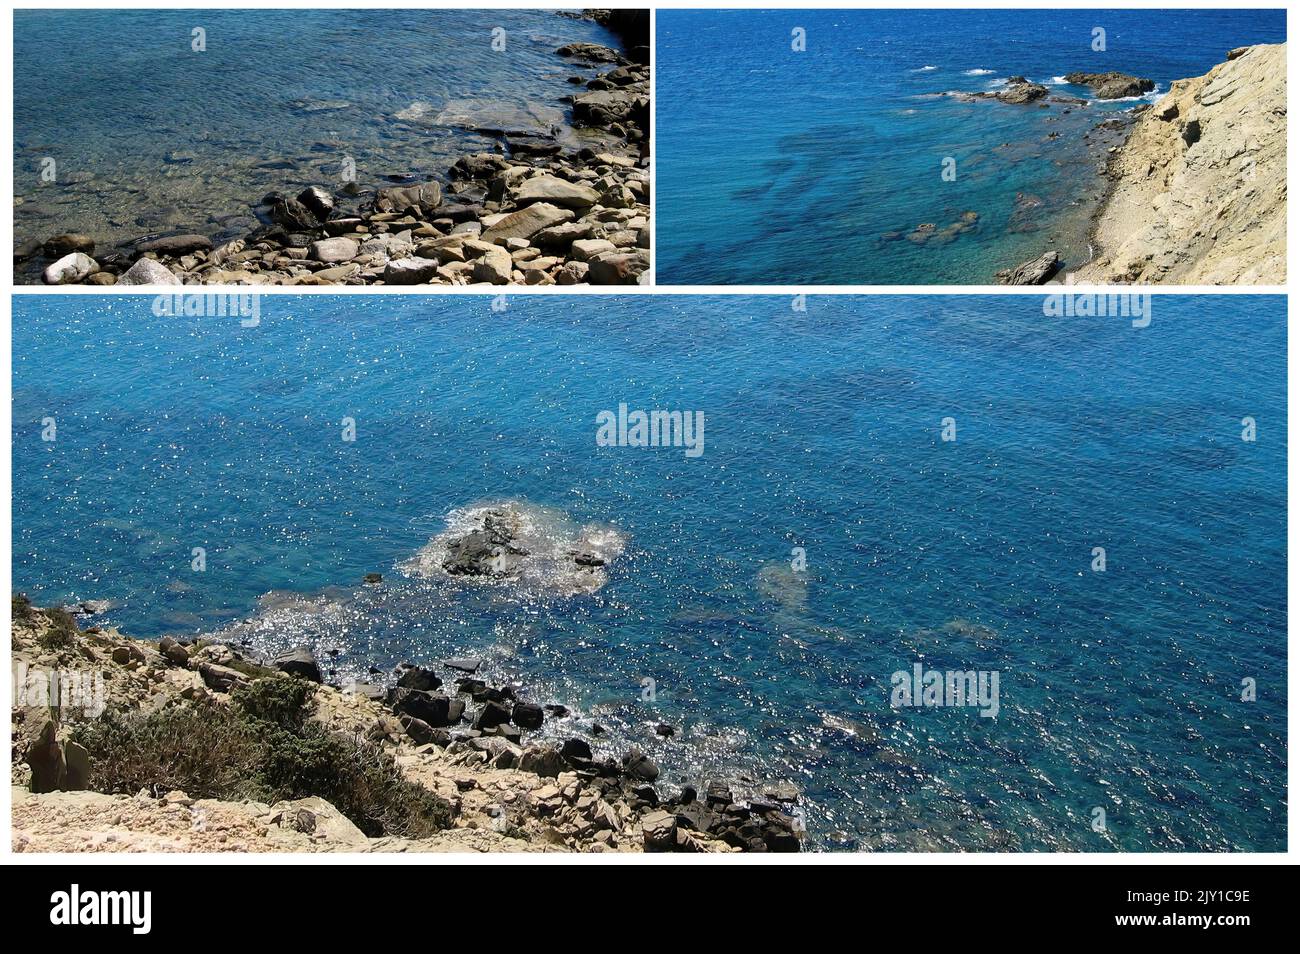 L'isola di Rodi ln Grecia, con il suo mare cristallino e i suoi siti archeologici è una delle più importanti destinazioni turistiche europee Foto Stock